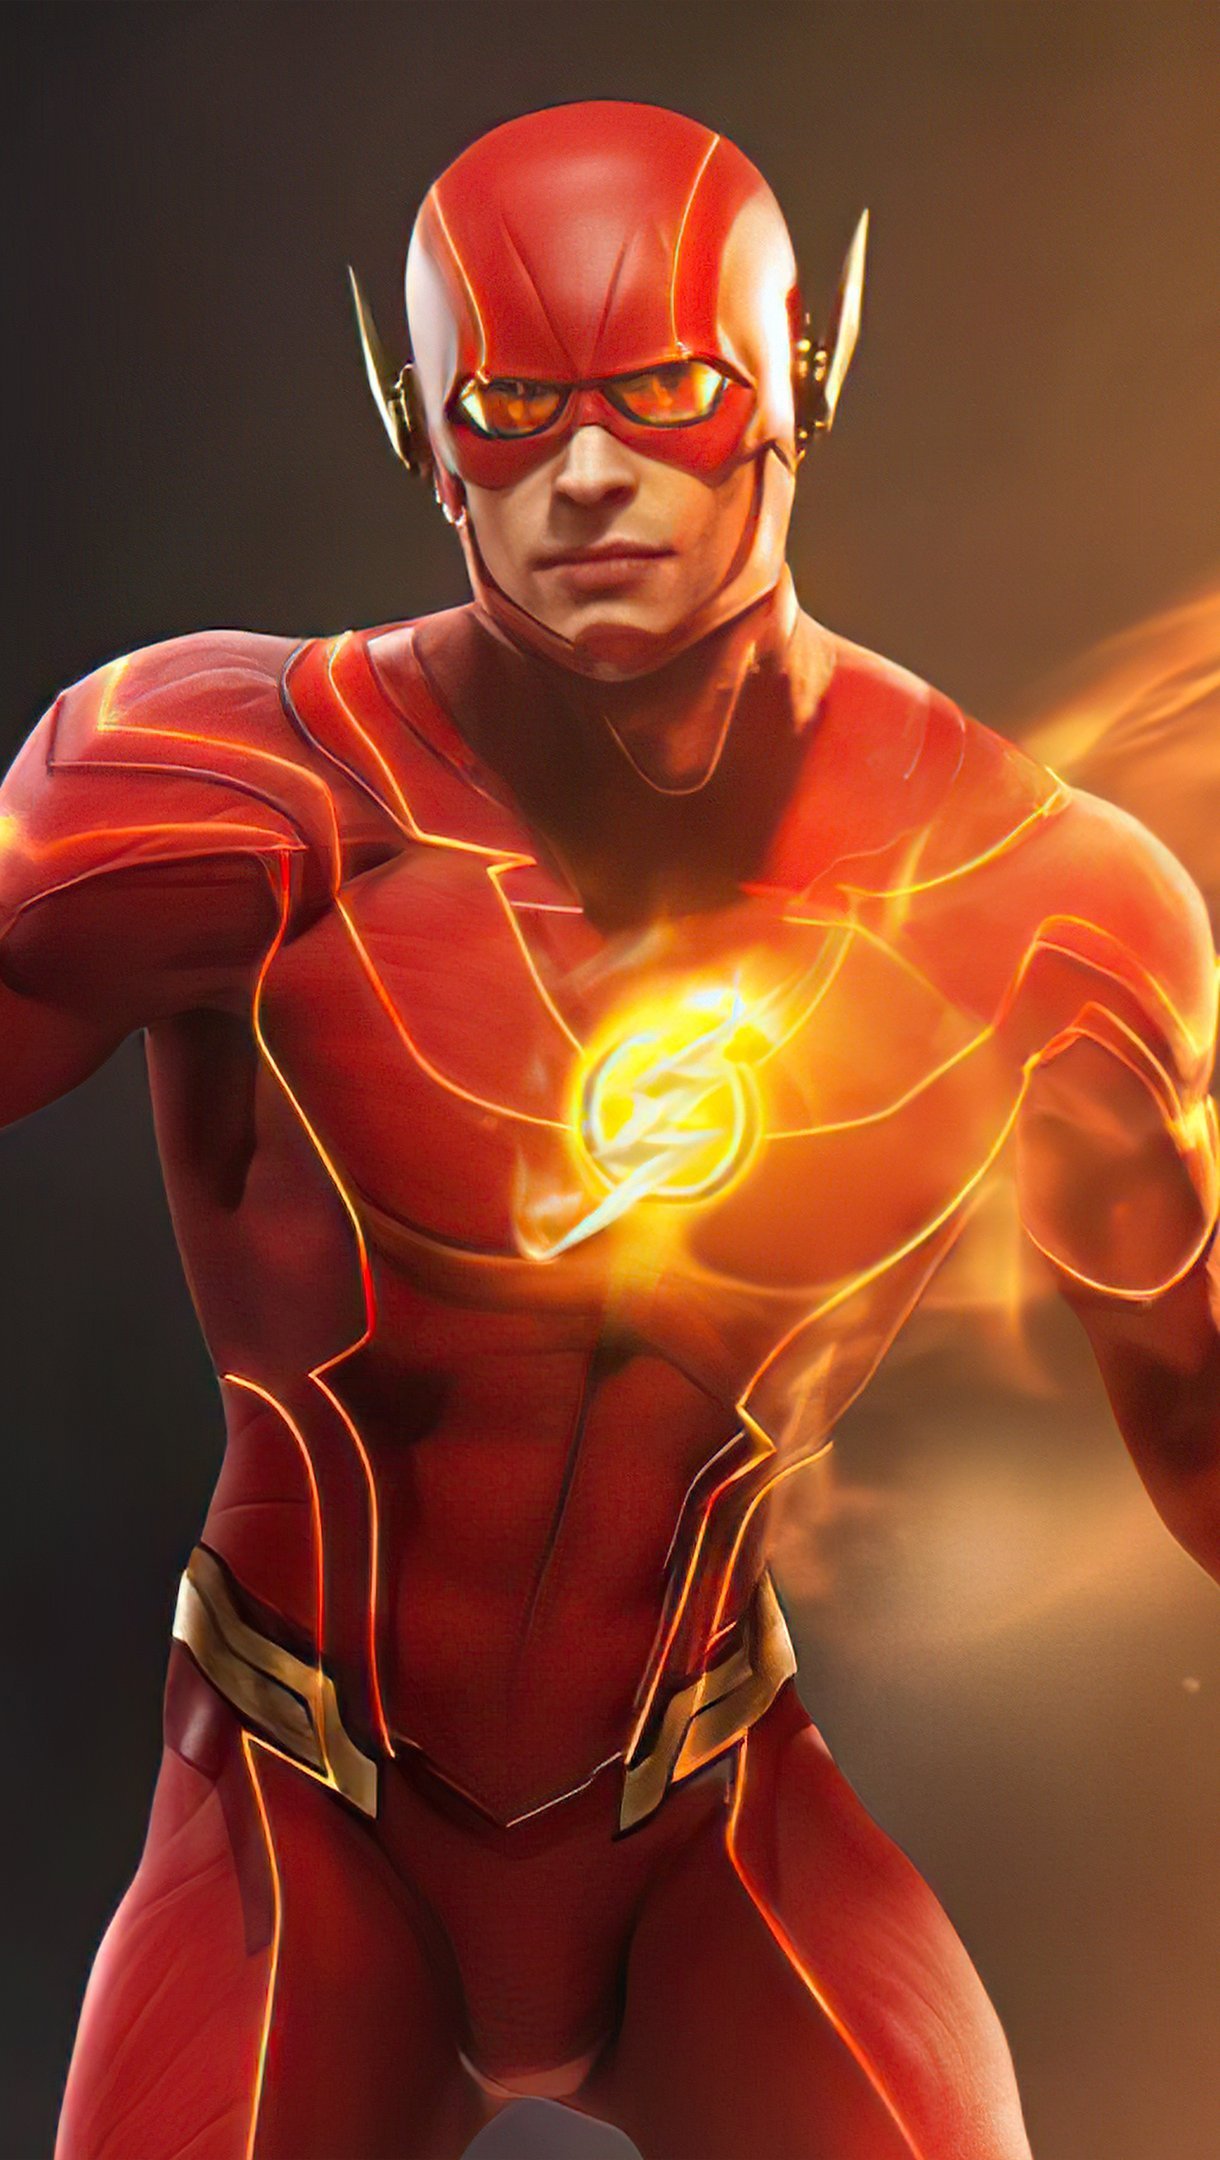 Fondos de pantalla Super heroe The Flash Vertical